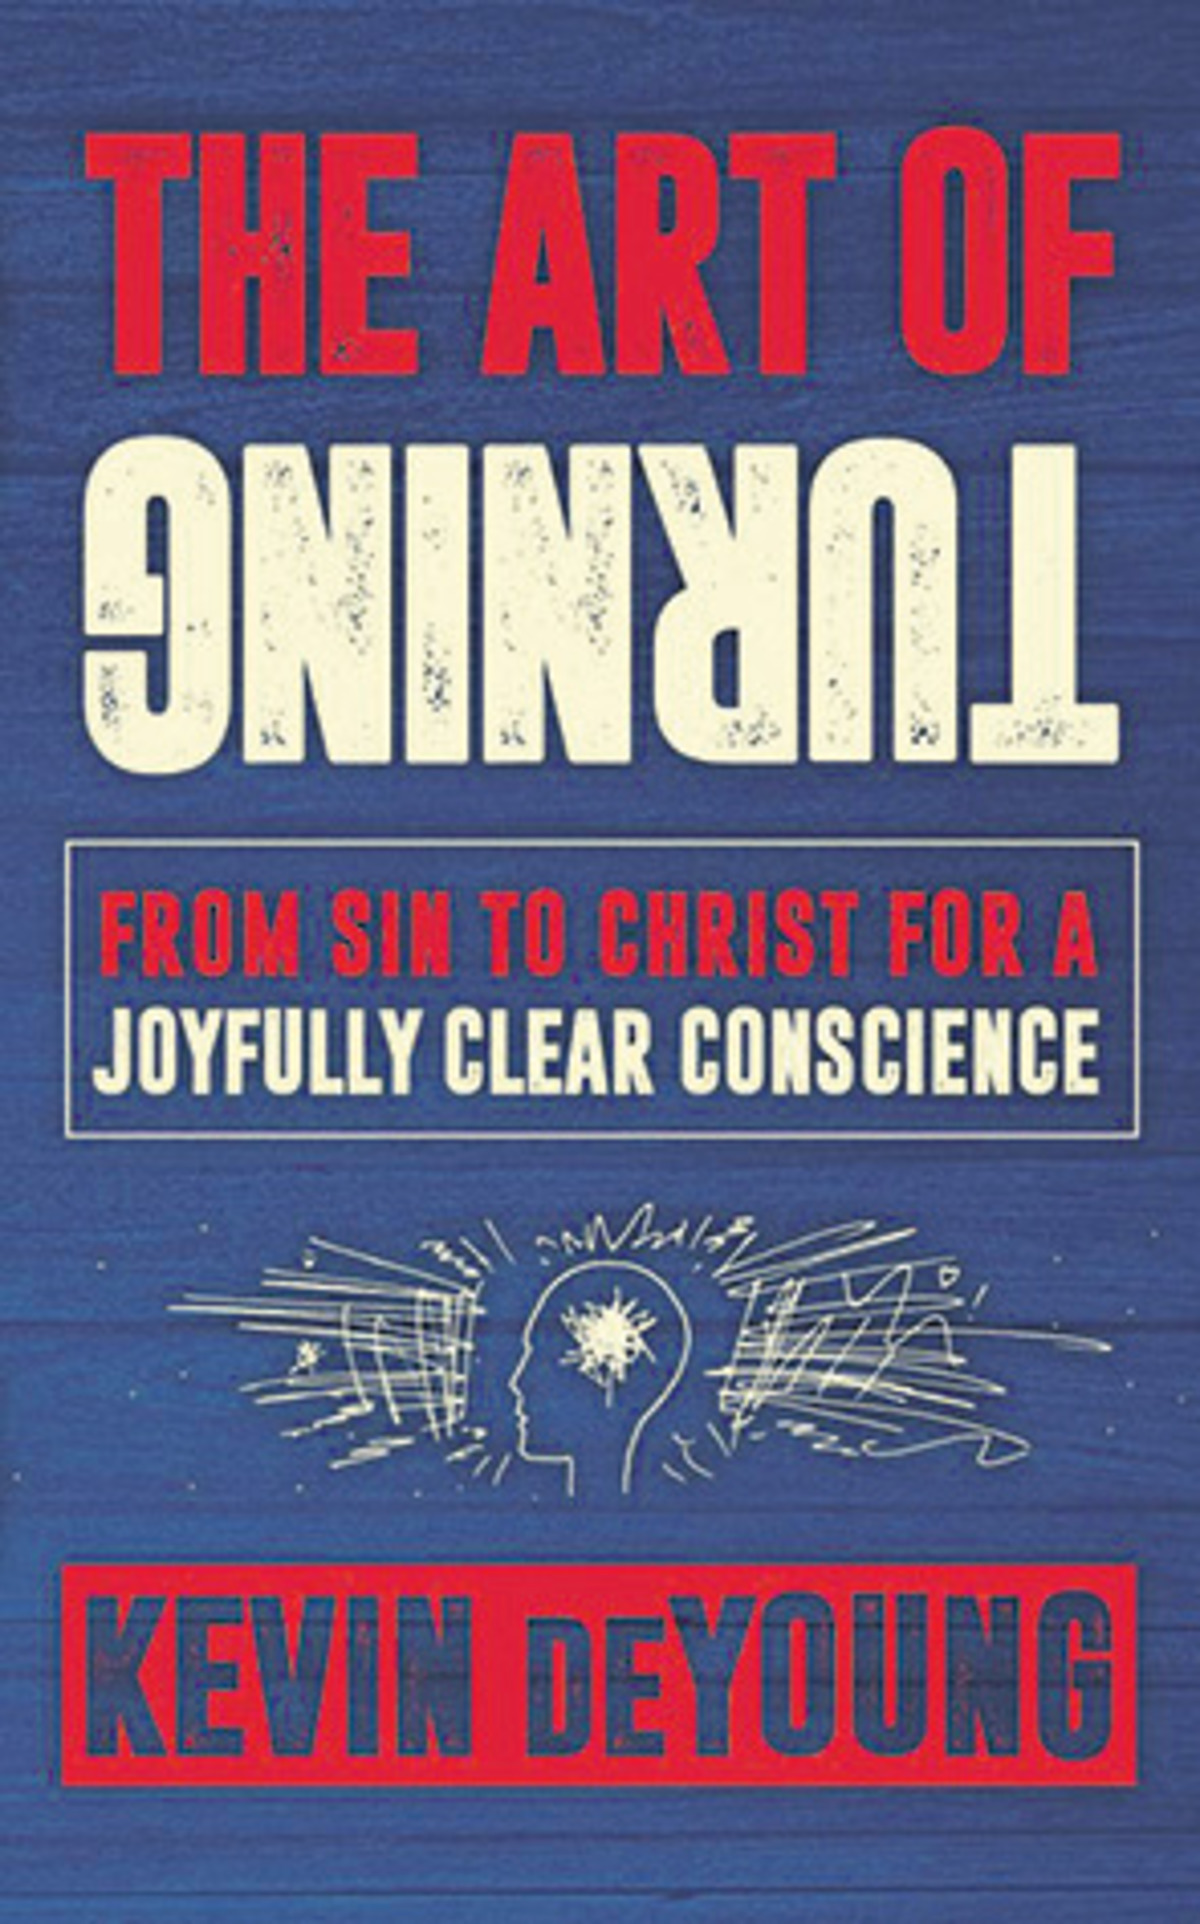 Conscience stricken? Evangelicals Now